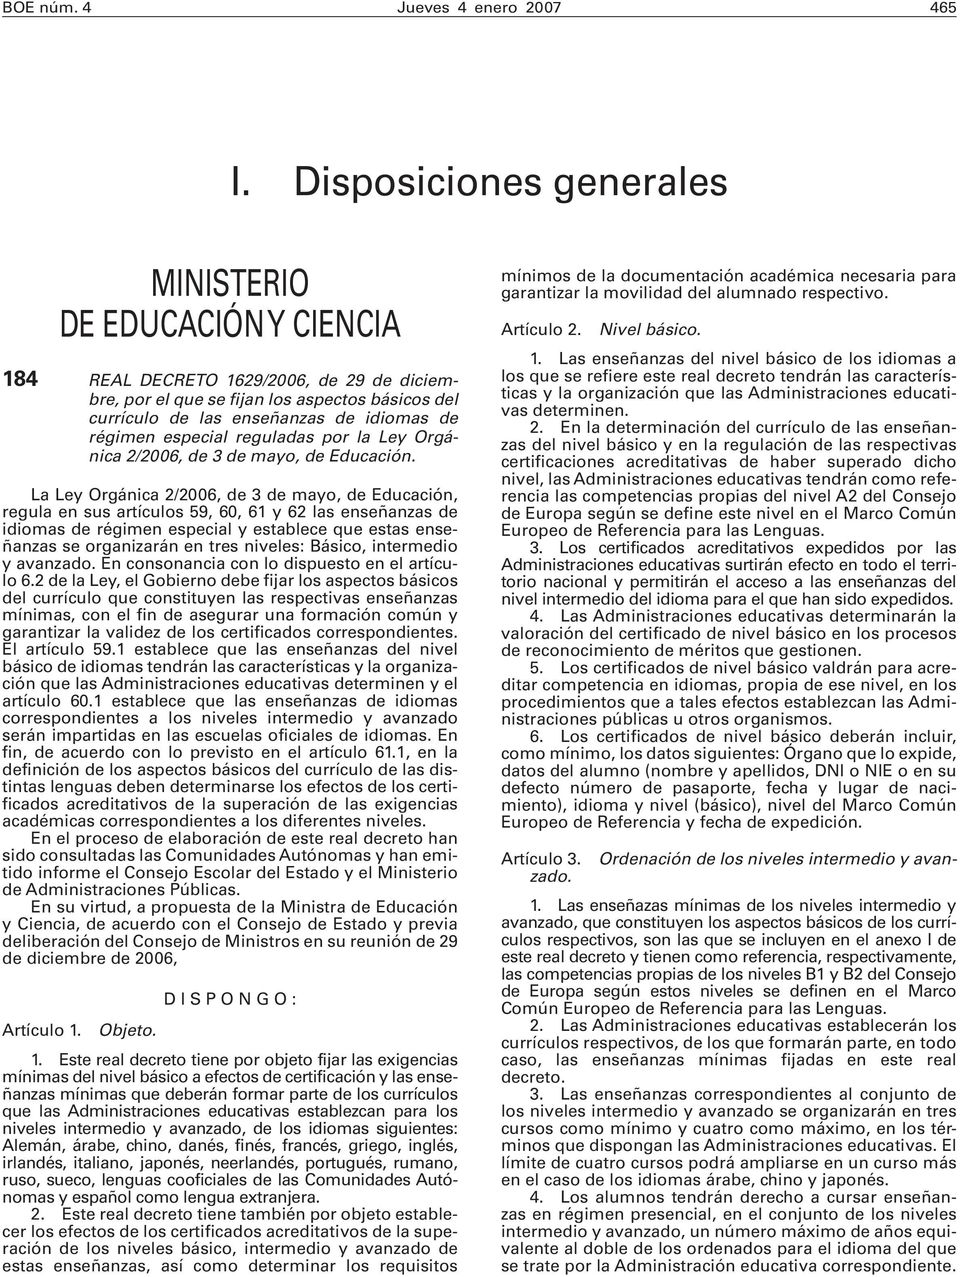 régimen especial reguladas por la Ley Orgánica 2/2006, de 3 de mayo, de Educación.